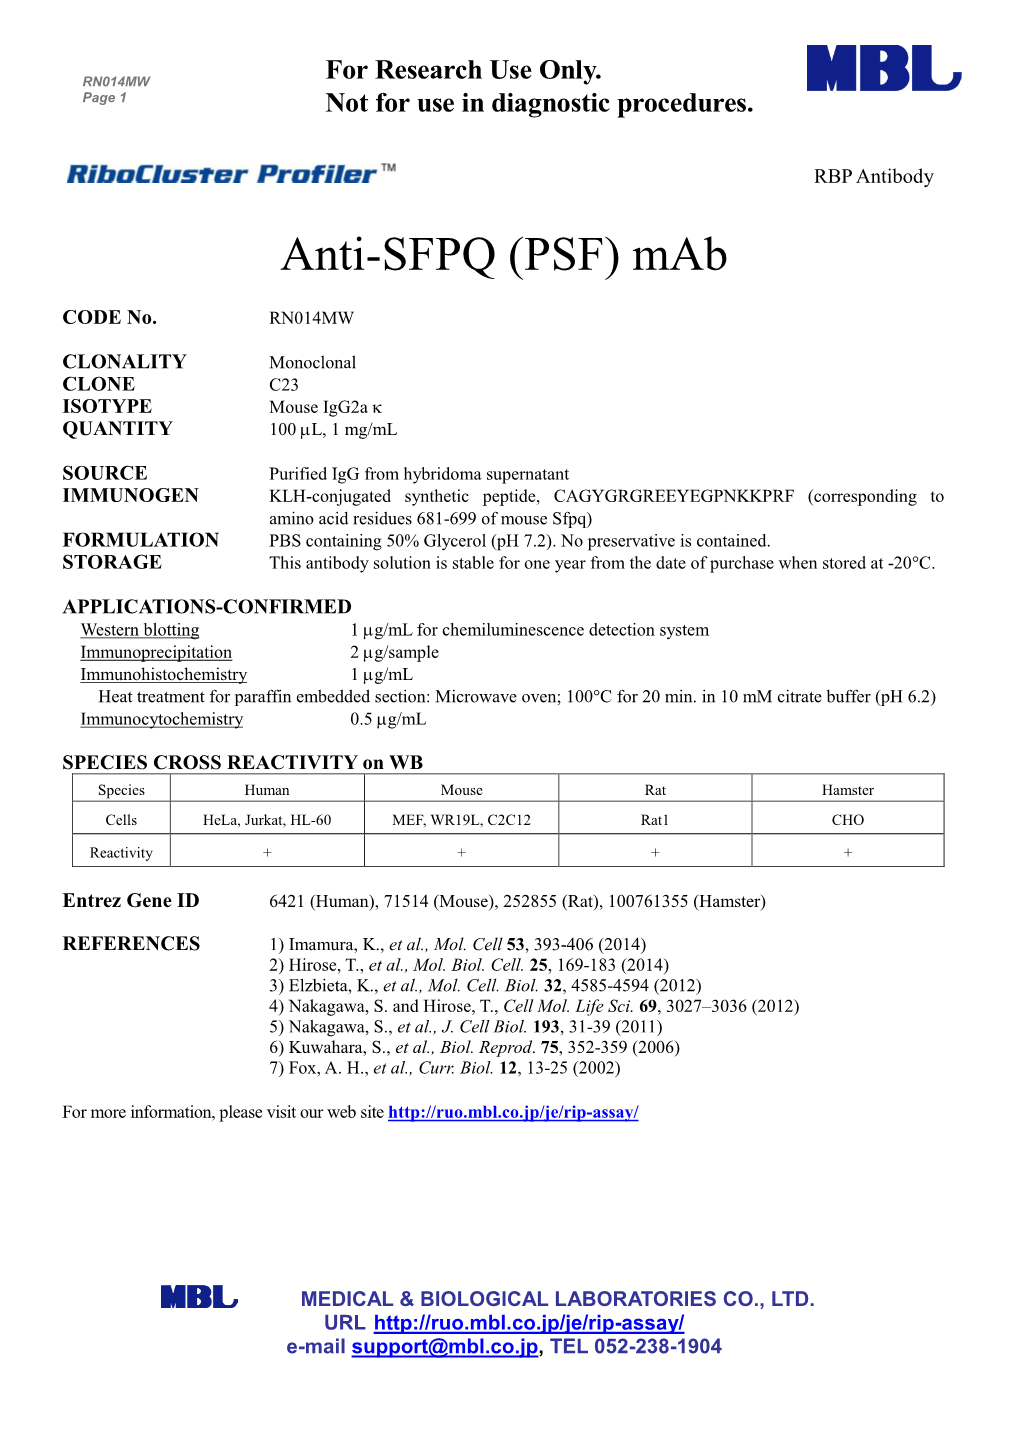 Anti-SFPQ (PSF) Mab